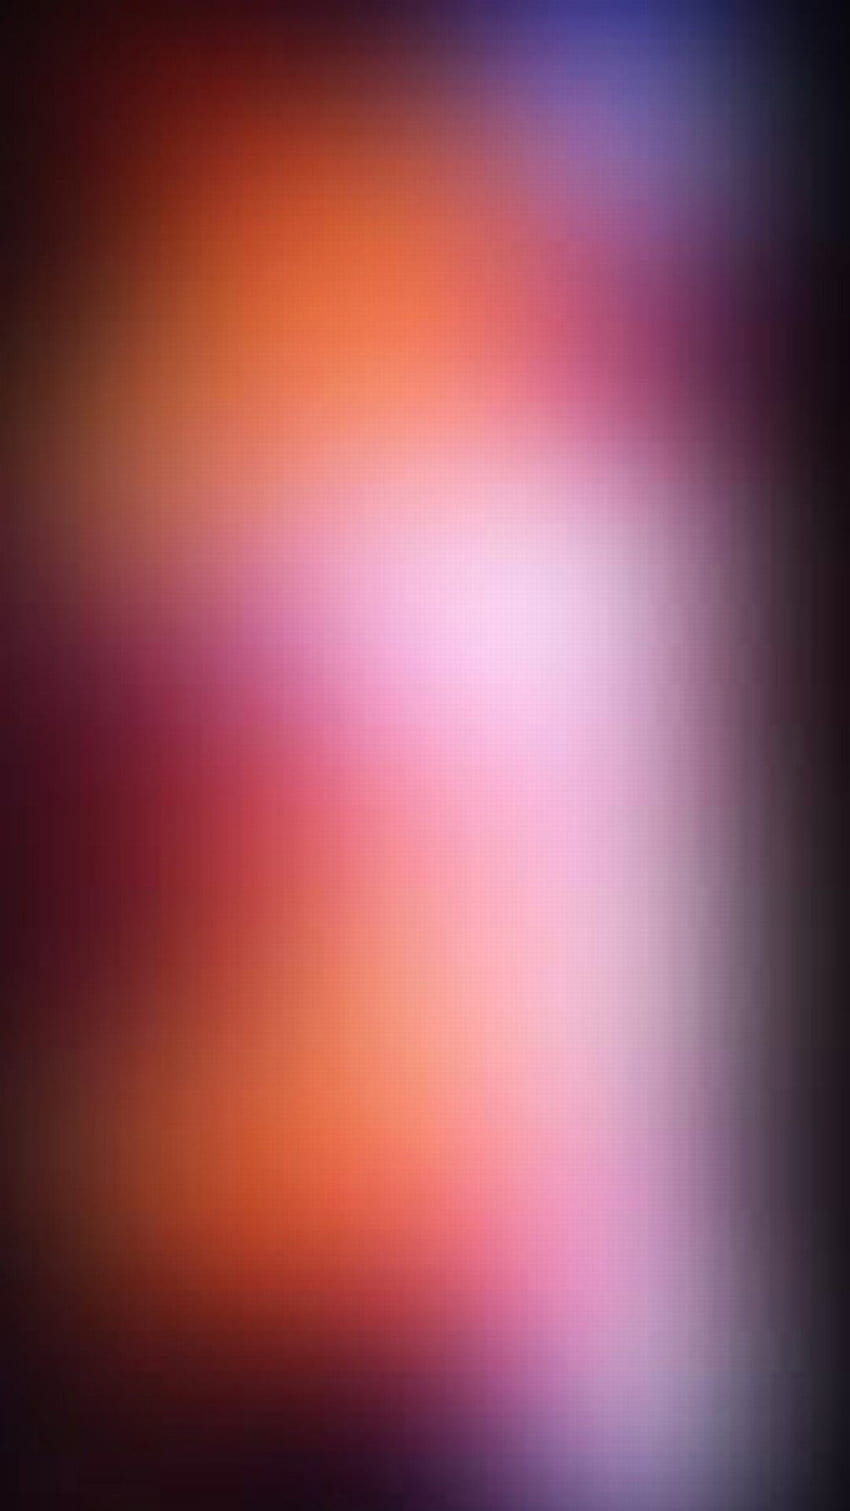 Full 1080 X 1920 Smartphone Blur 1080, cb blur HD phone wallpaper